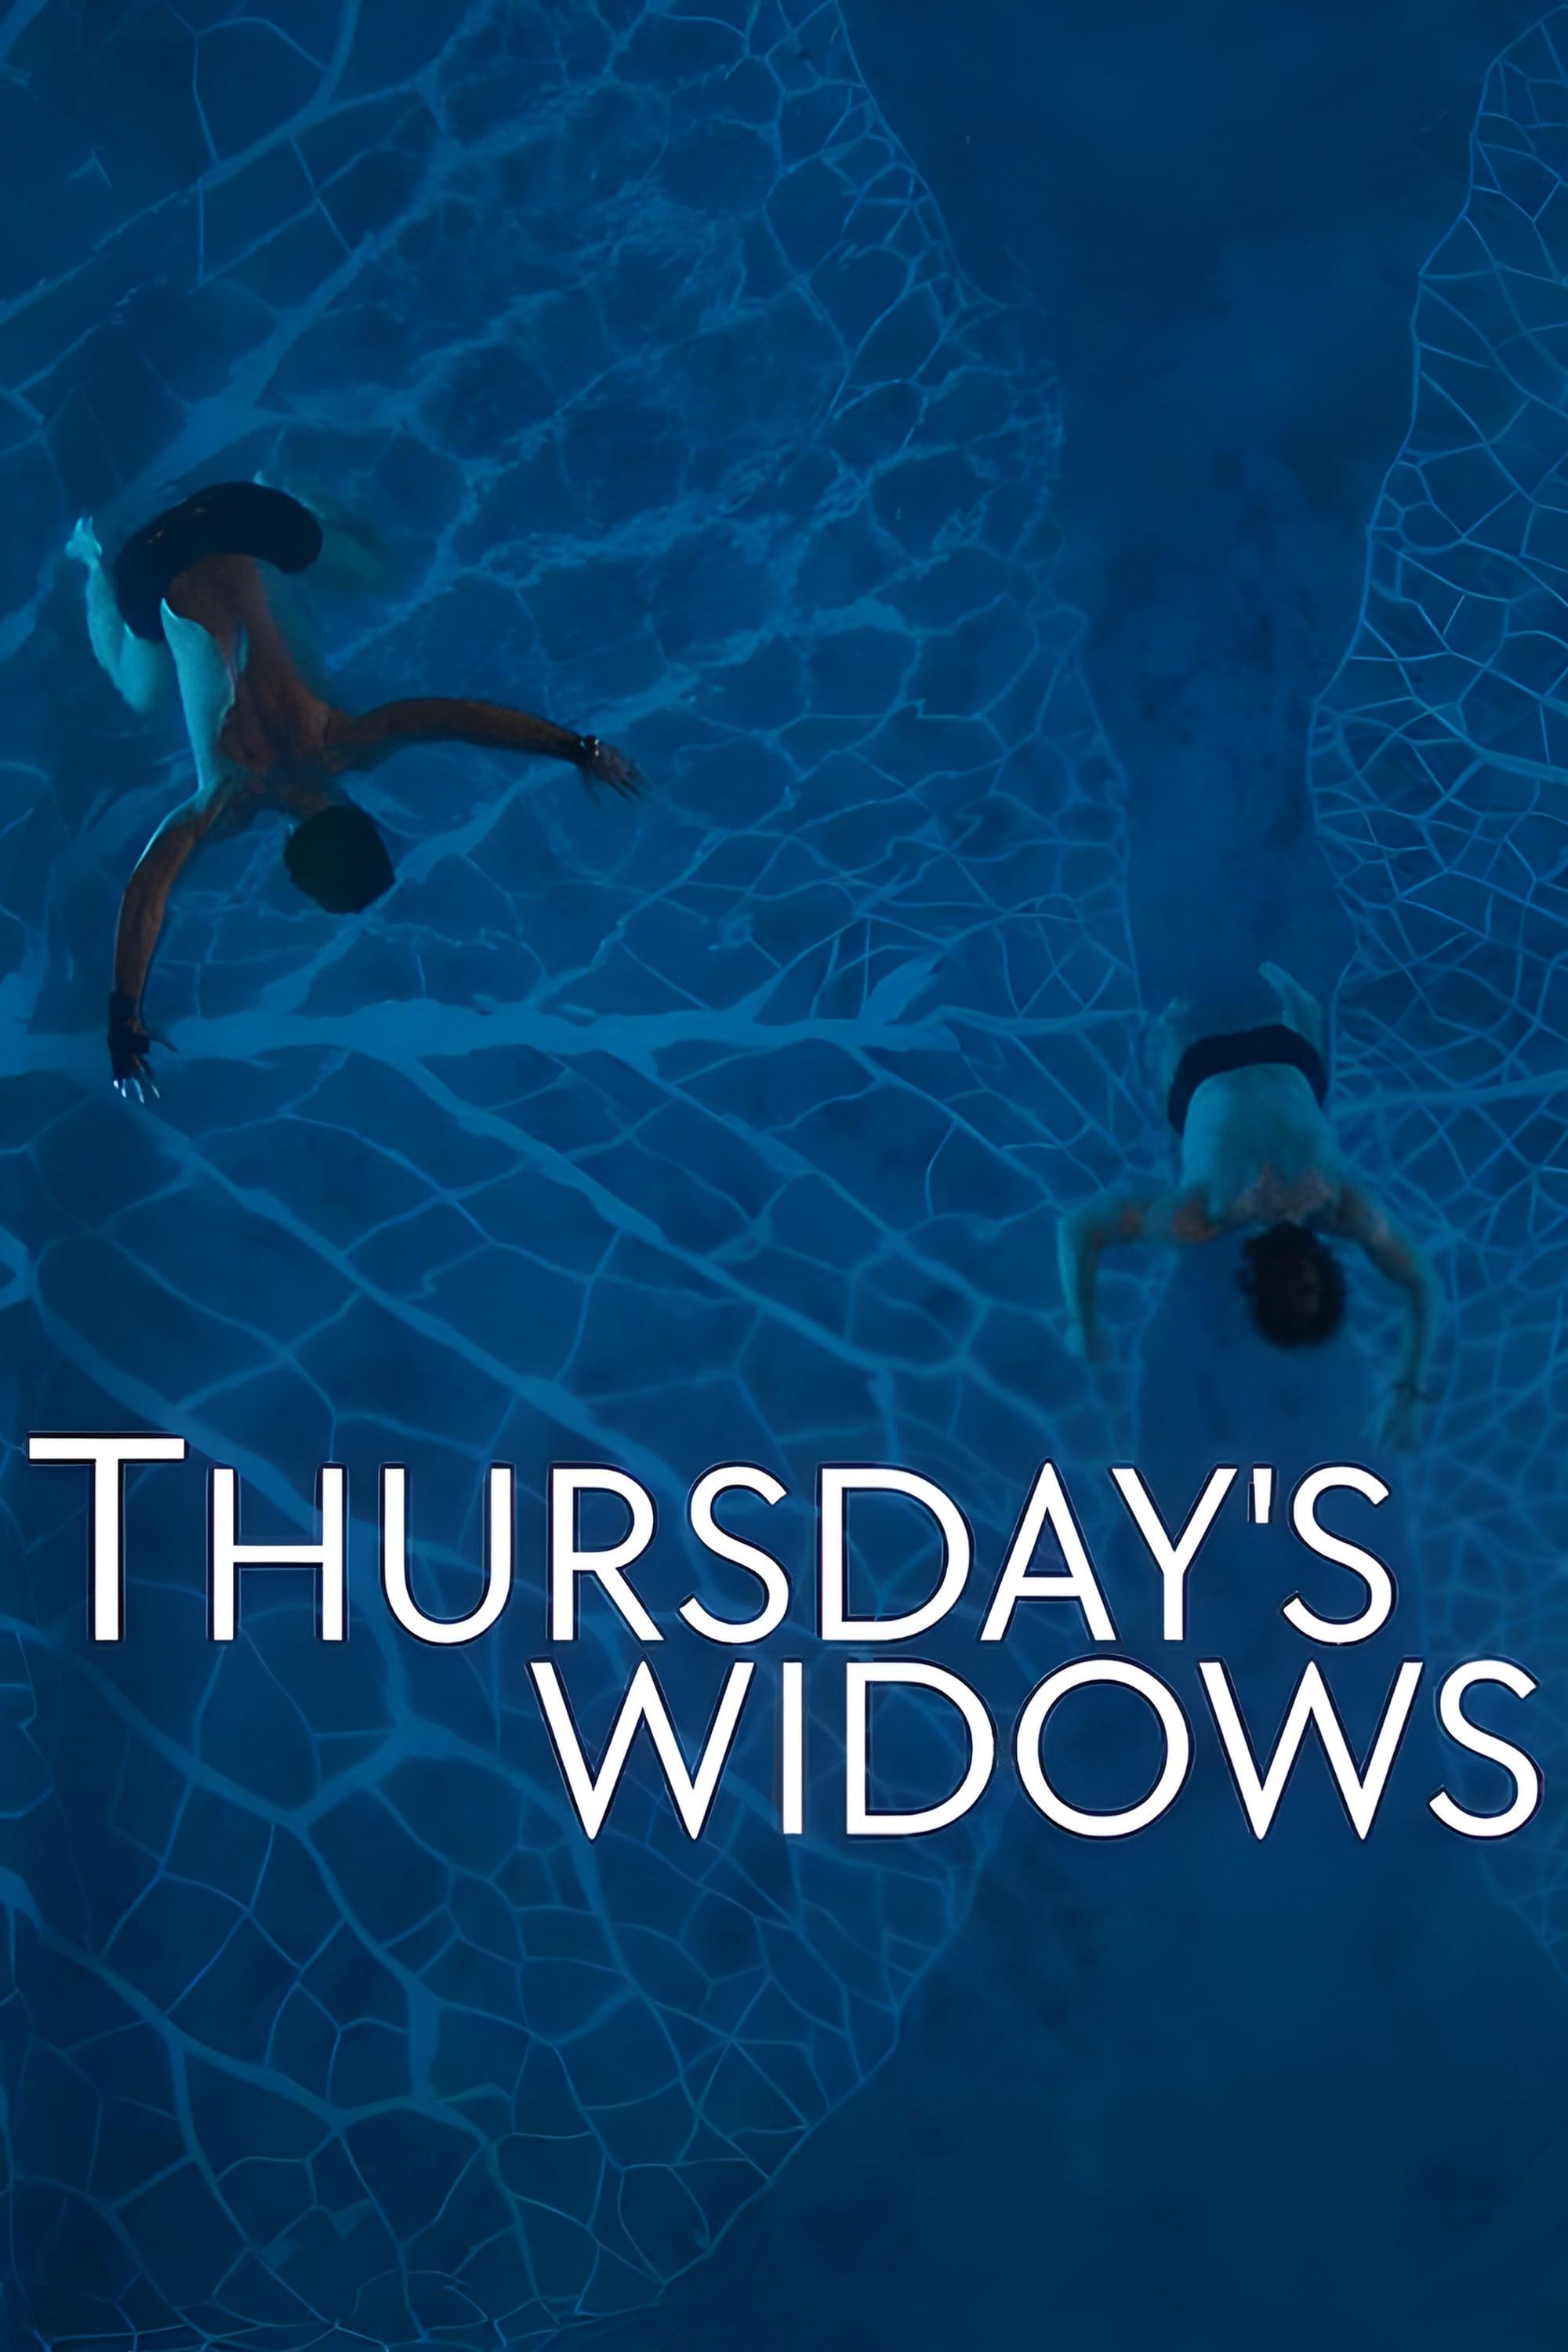 Thursday's Widows poster